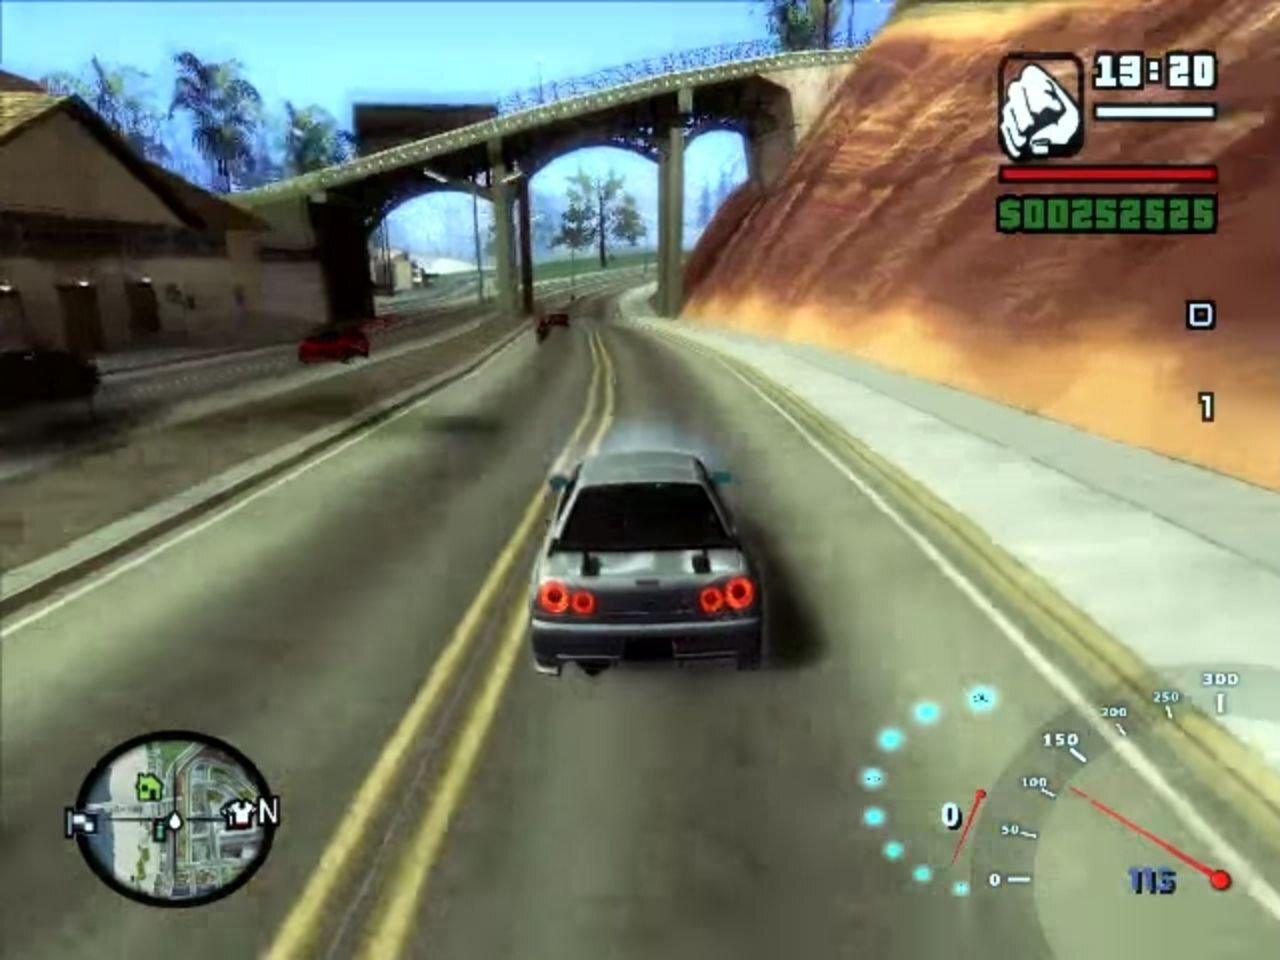  Играй в GTA San Andreas по сети!